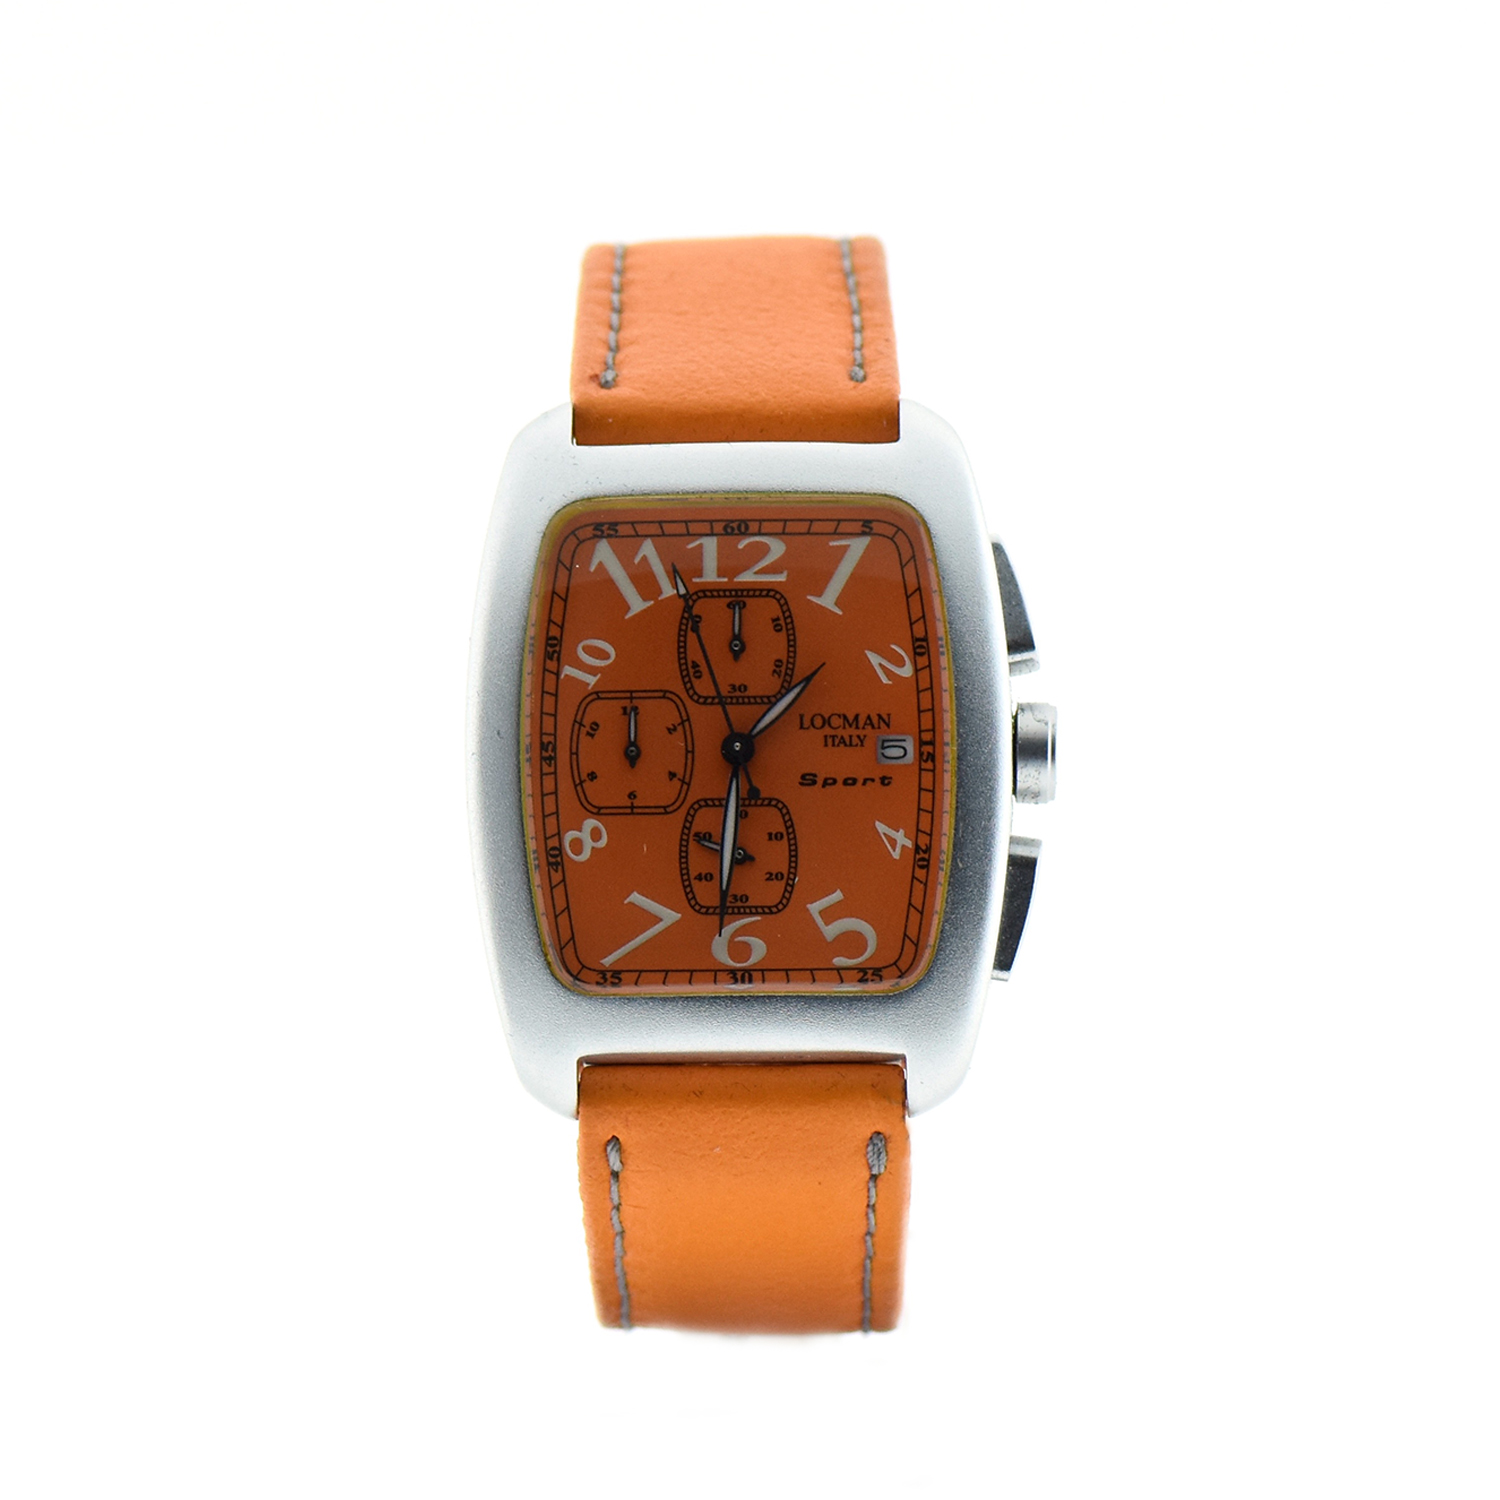 Oro Locman modello Sport cronografo cassa alluminio datario cinturino pelle arancione Gioielleria Cipolla Palermo